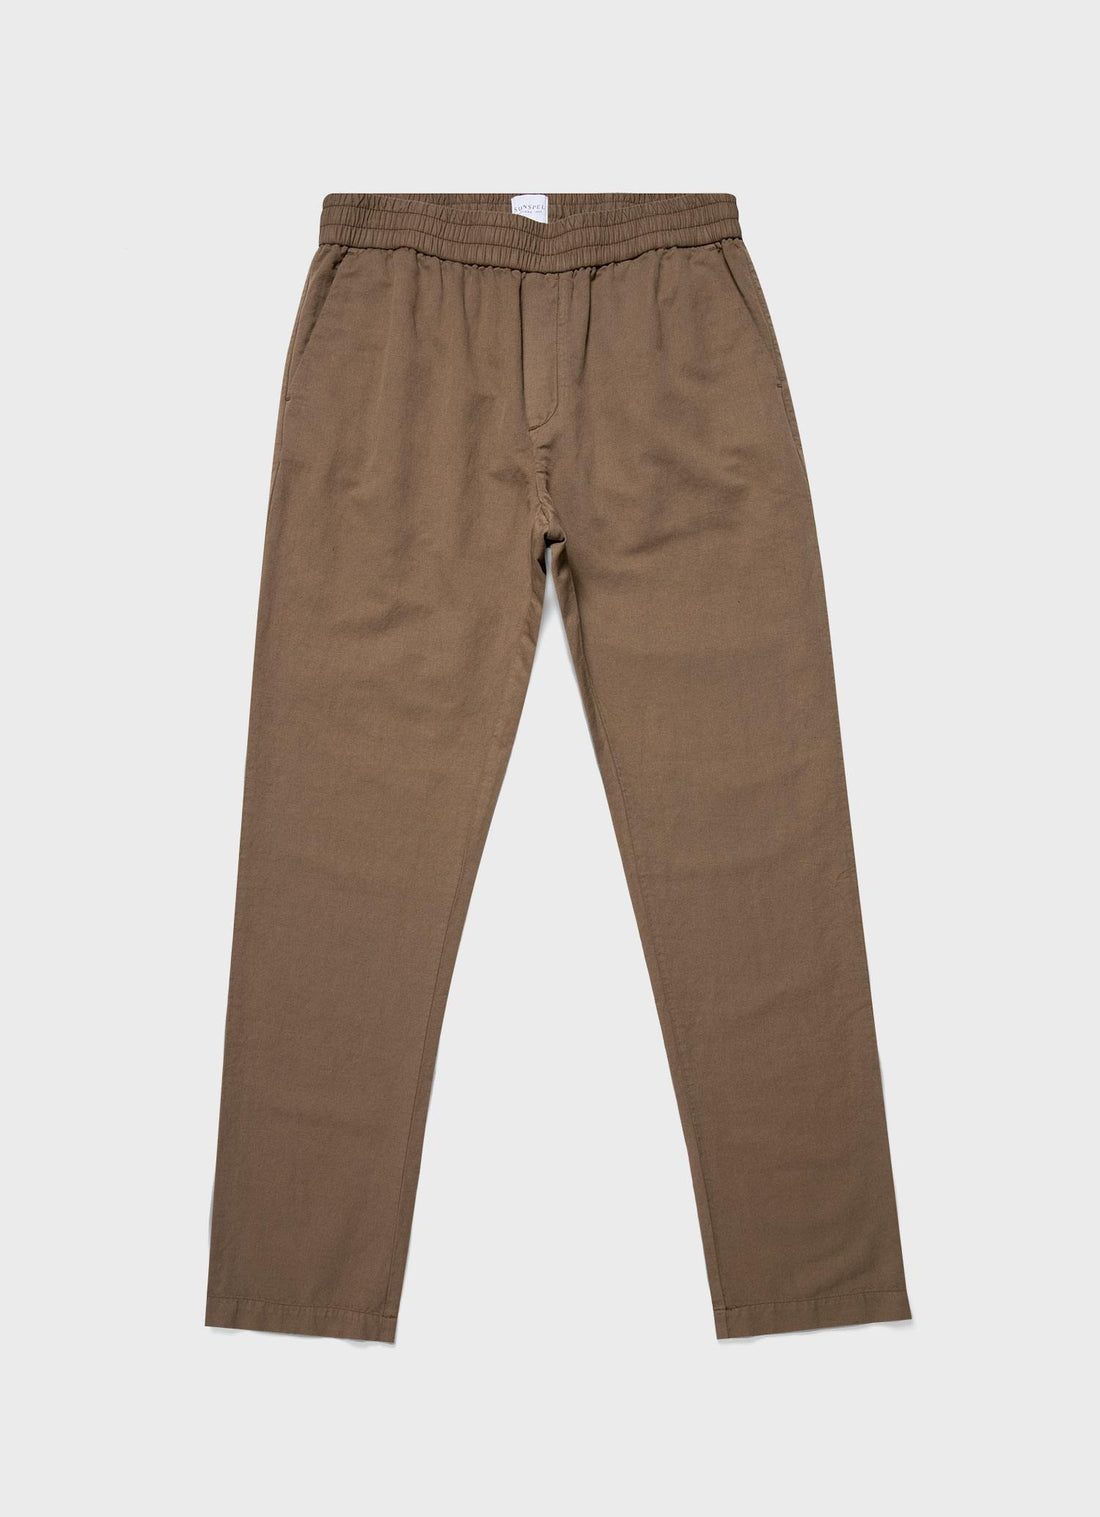 Buy Cotton Trousers & Trouser Pants For Men - Apella